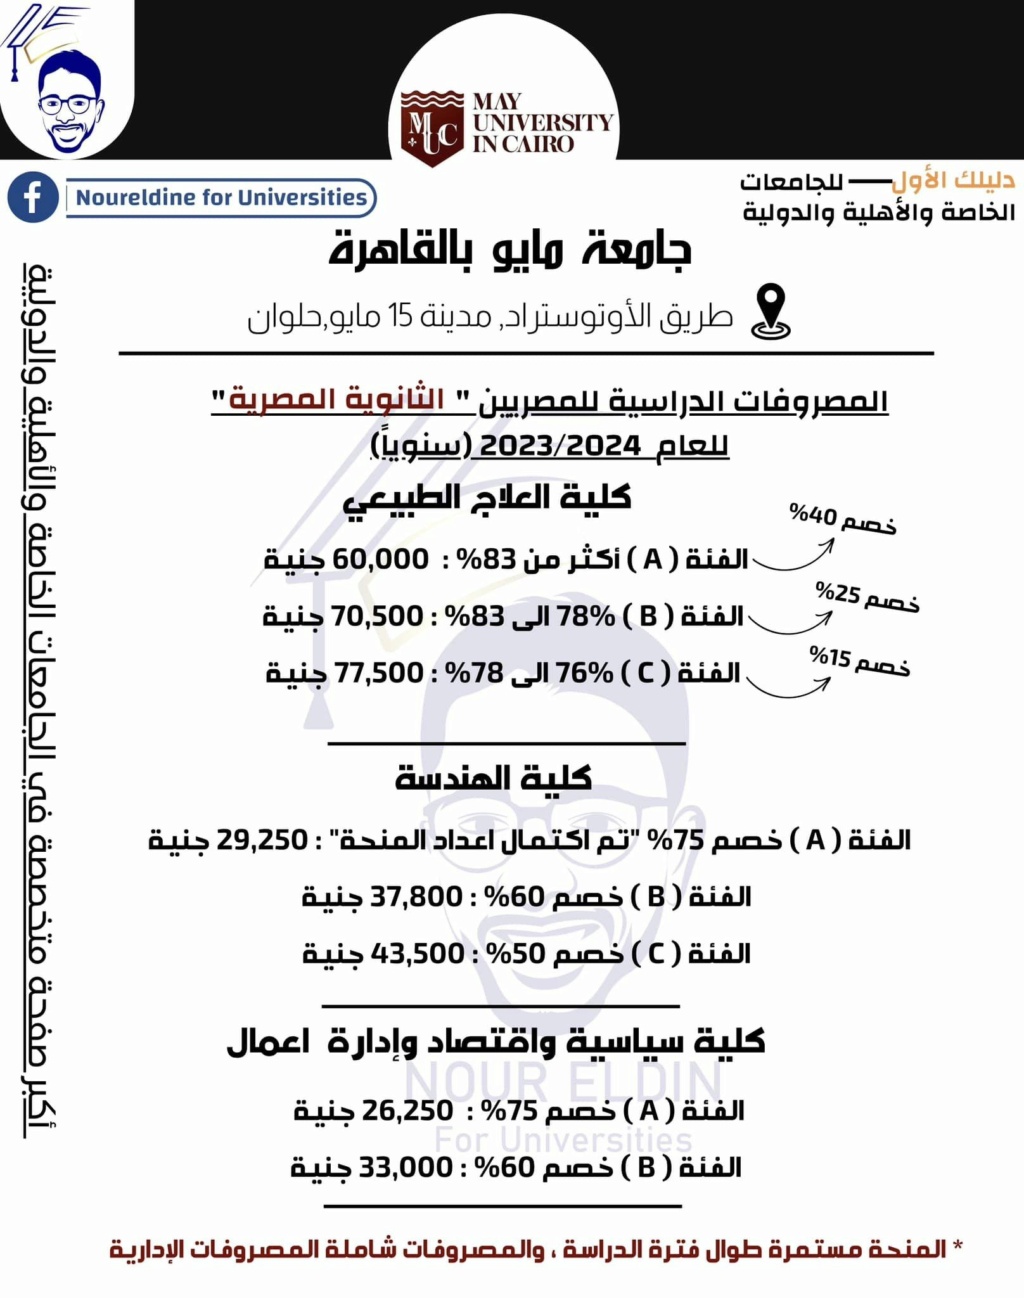 تظلمات الثانوية العامة - منح جامعة مايو بالقاهرة لطلاب الثانوية العامة والأزهرية 2023 . 2024 174